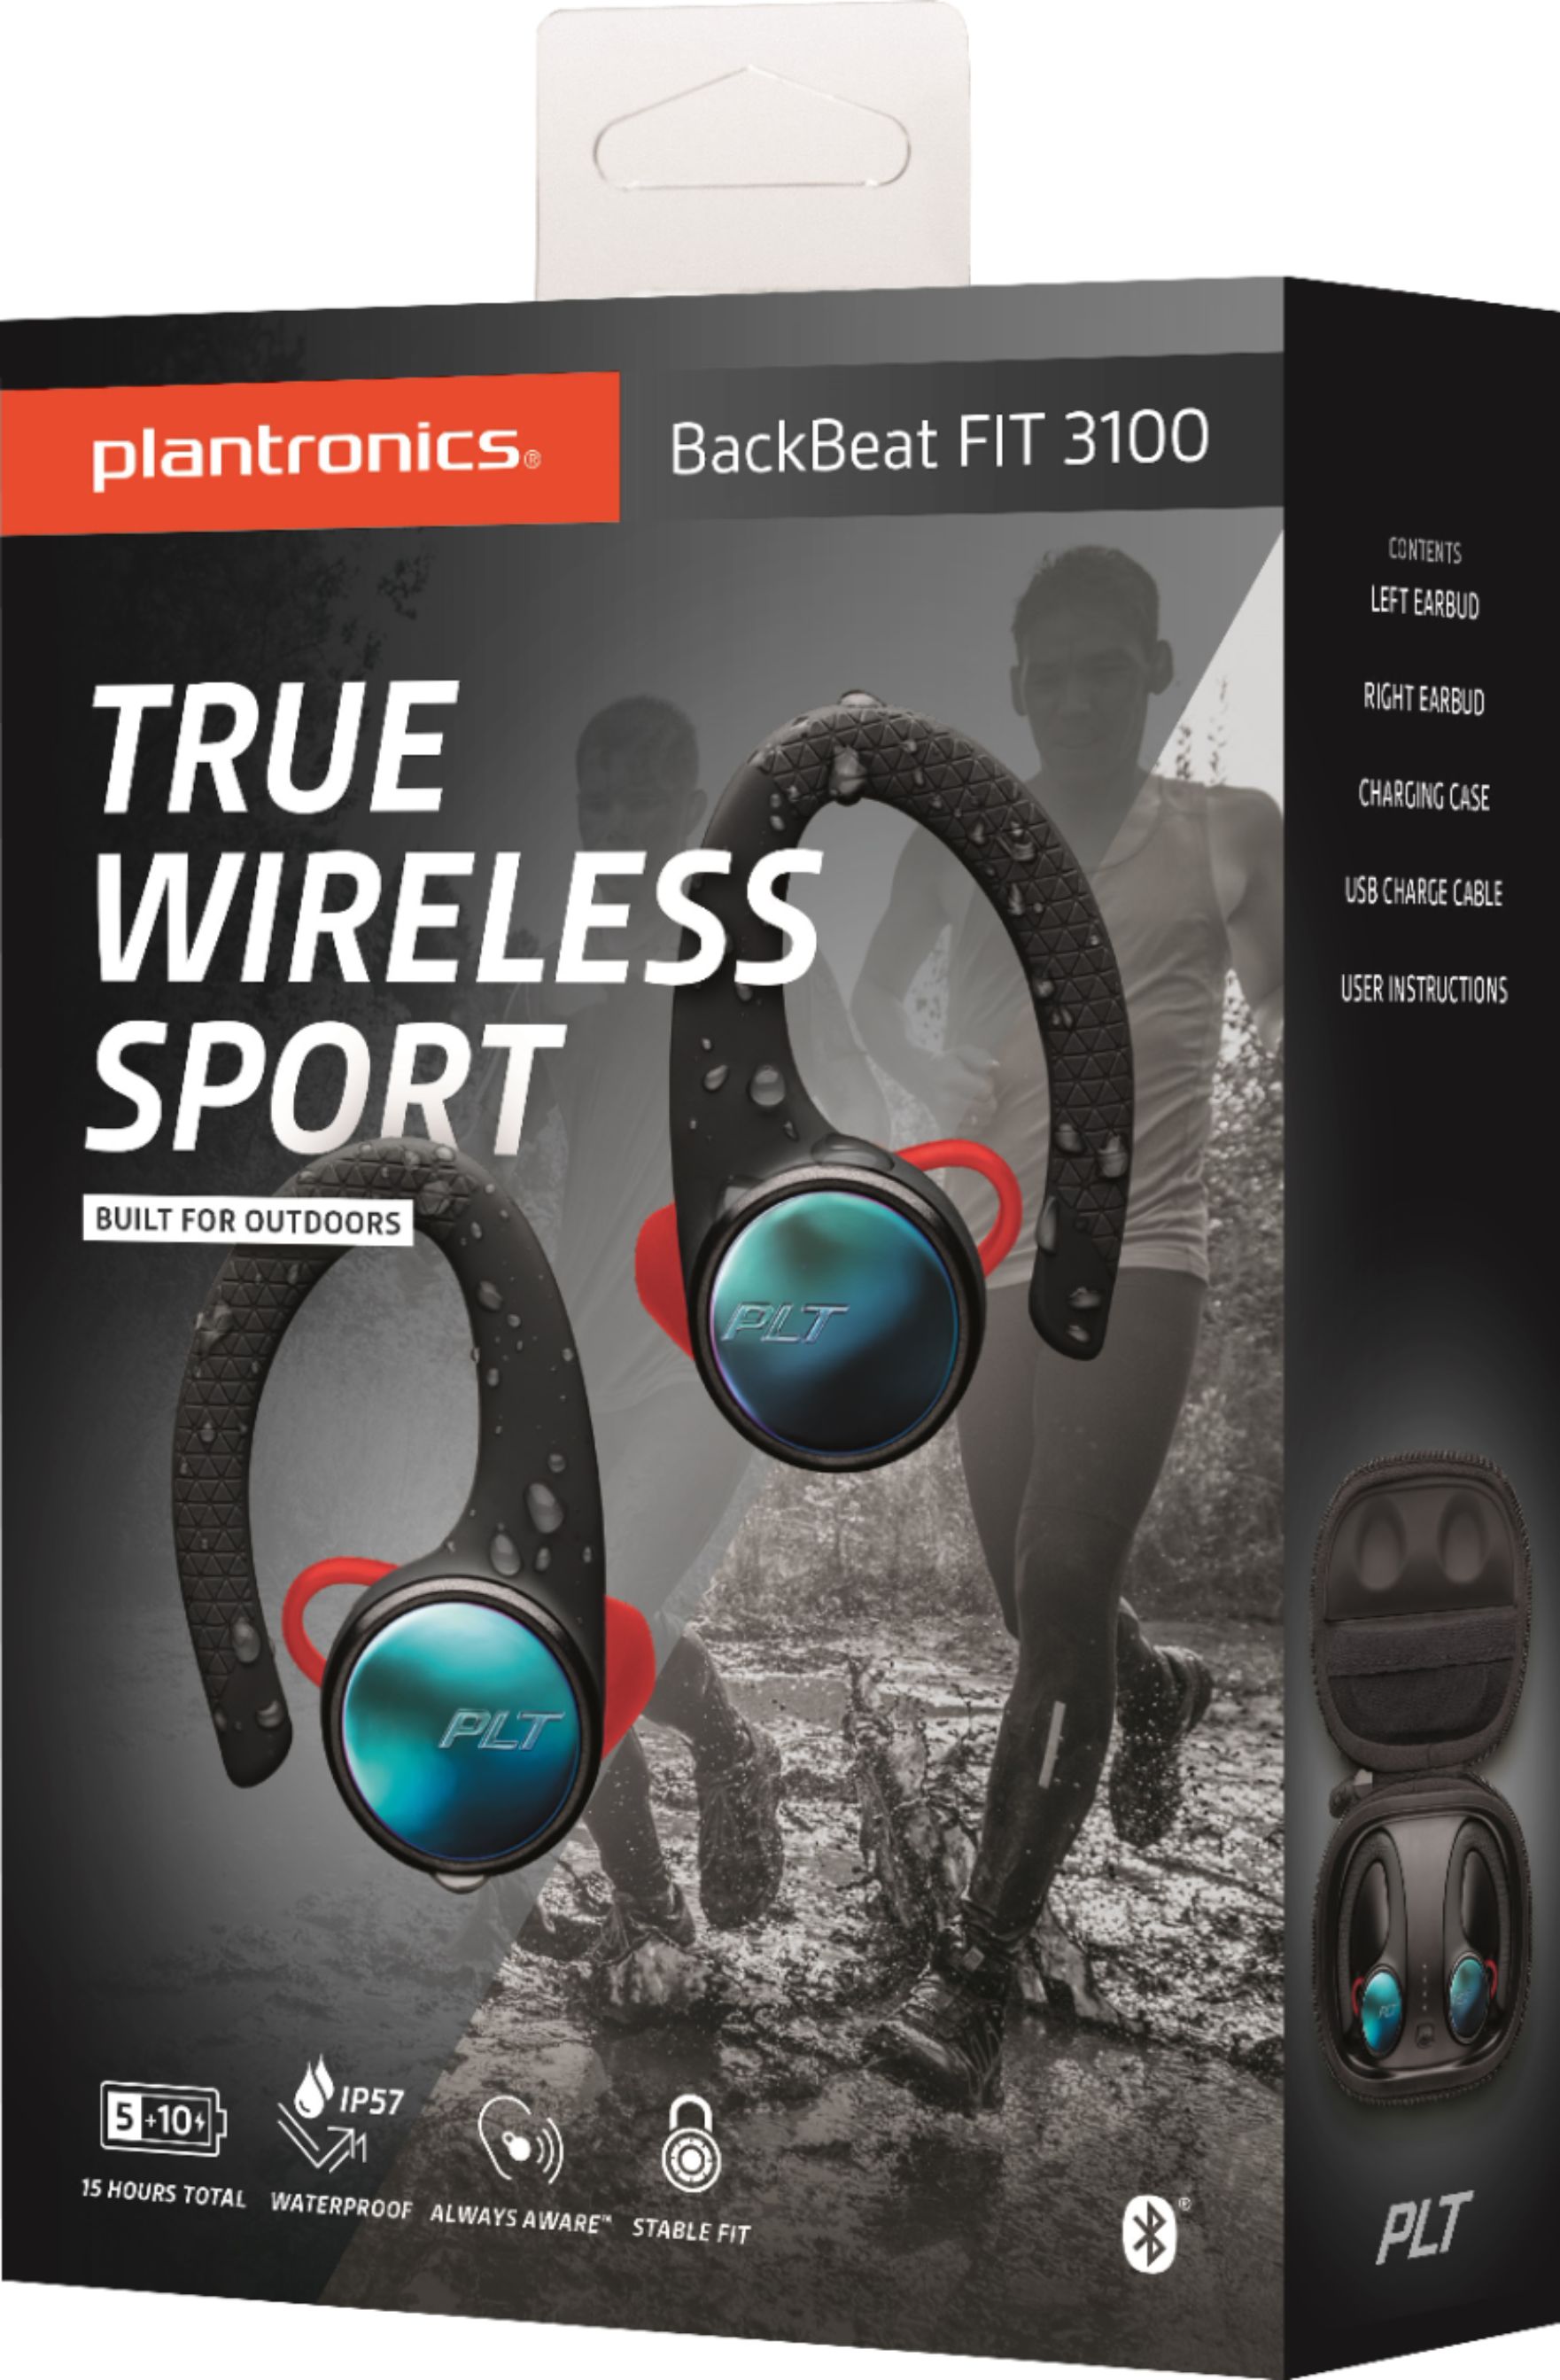 backbeat fit 3100 true wireless sport earbuds